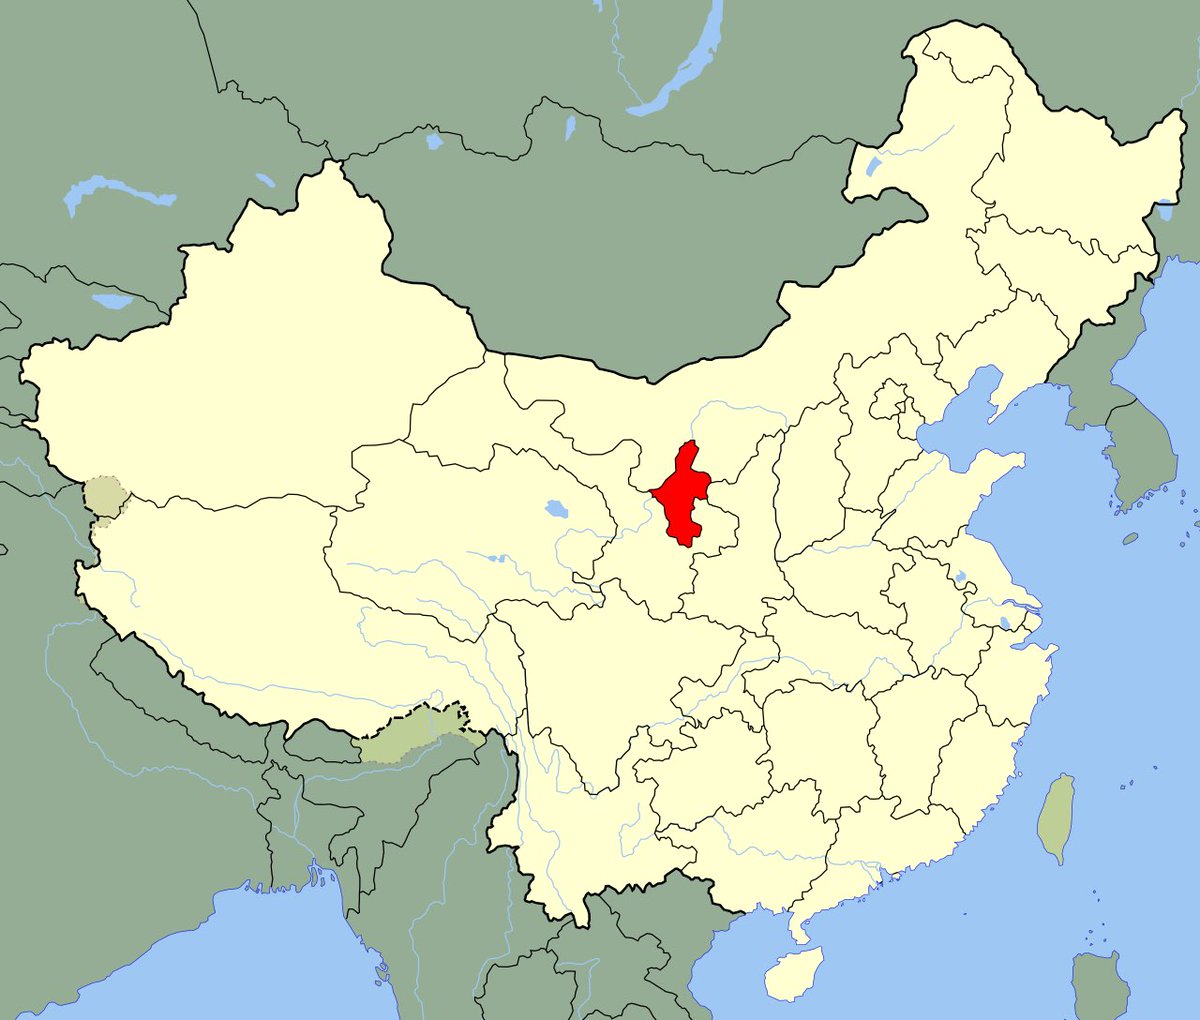 Les Hui sont un groupe ethnique originaire de la région du Ninxgia en Chine 🇨🇳 
Ils sont l’une des 56 ethnies constituante de la Chine.